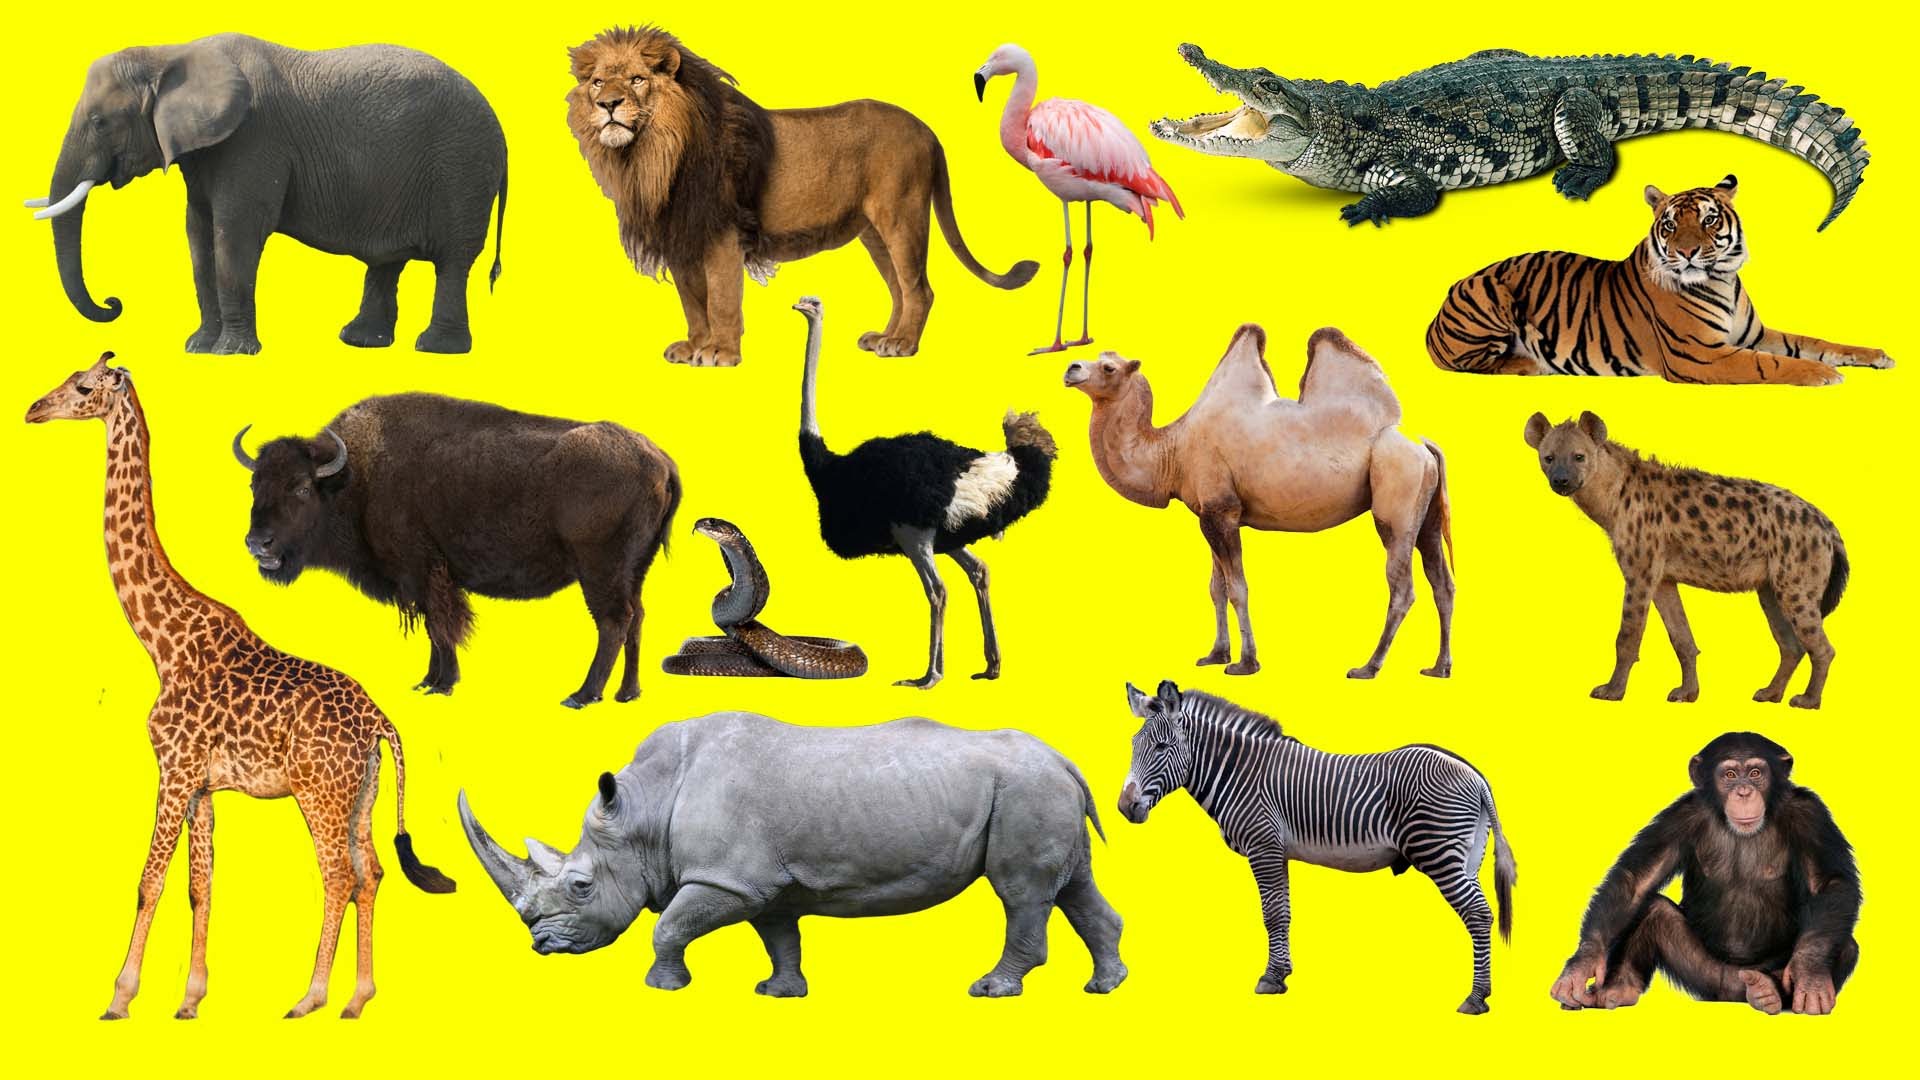 Wild animals тема. Животные Африки. Африканские животные для детей. Дикие животные Африки. Животные Африки дл ядетй.